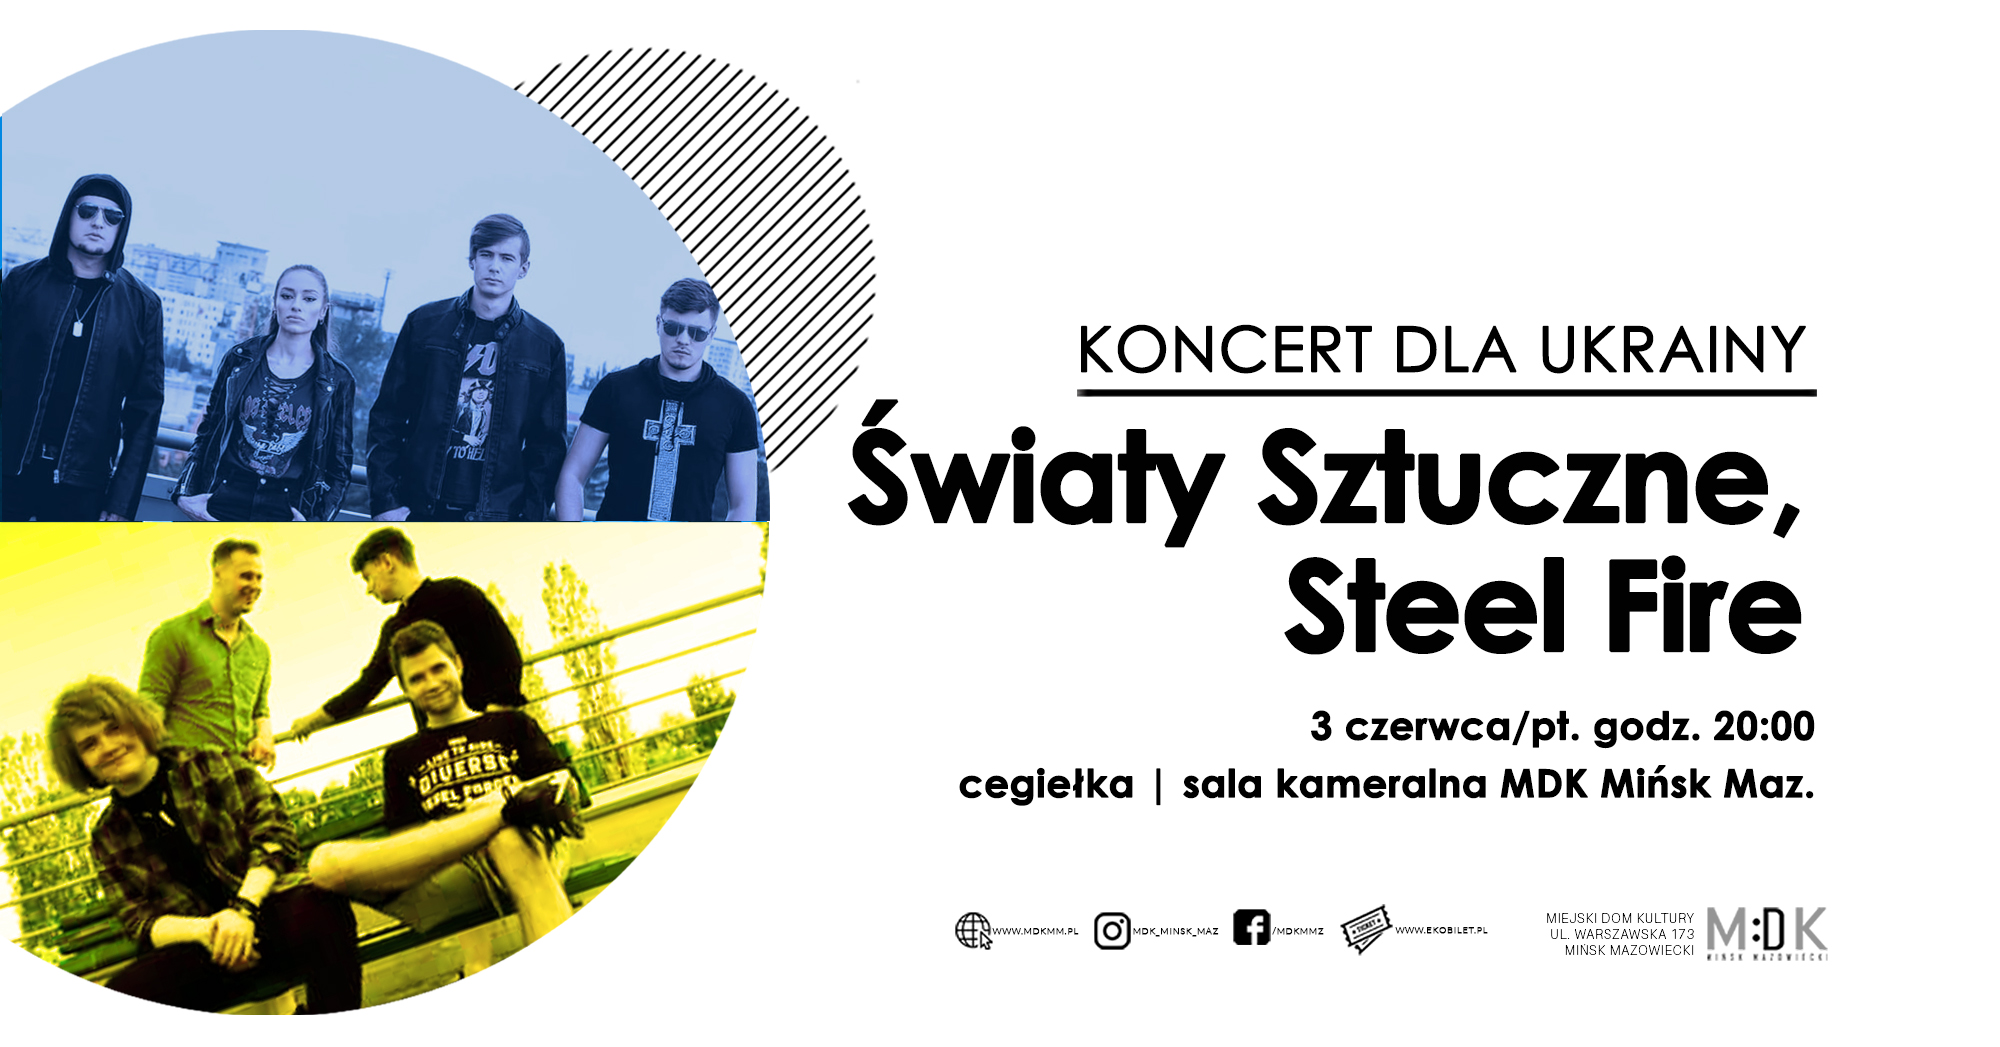 Światy Sztuczne, SteelFire | koncert dla Ukrainy